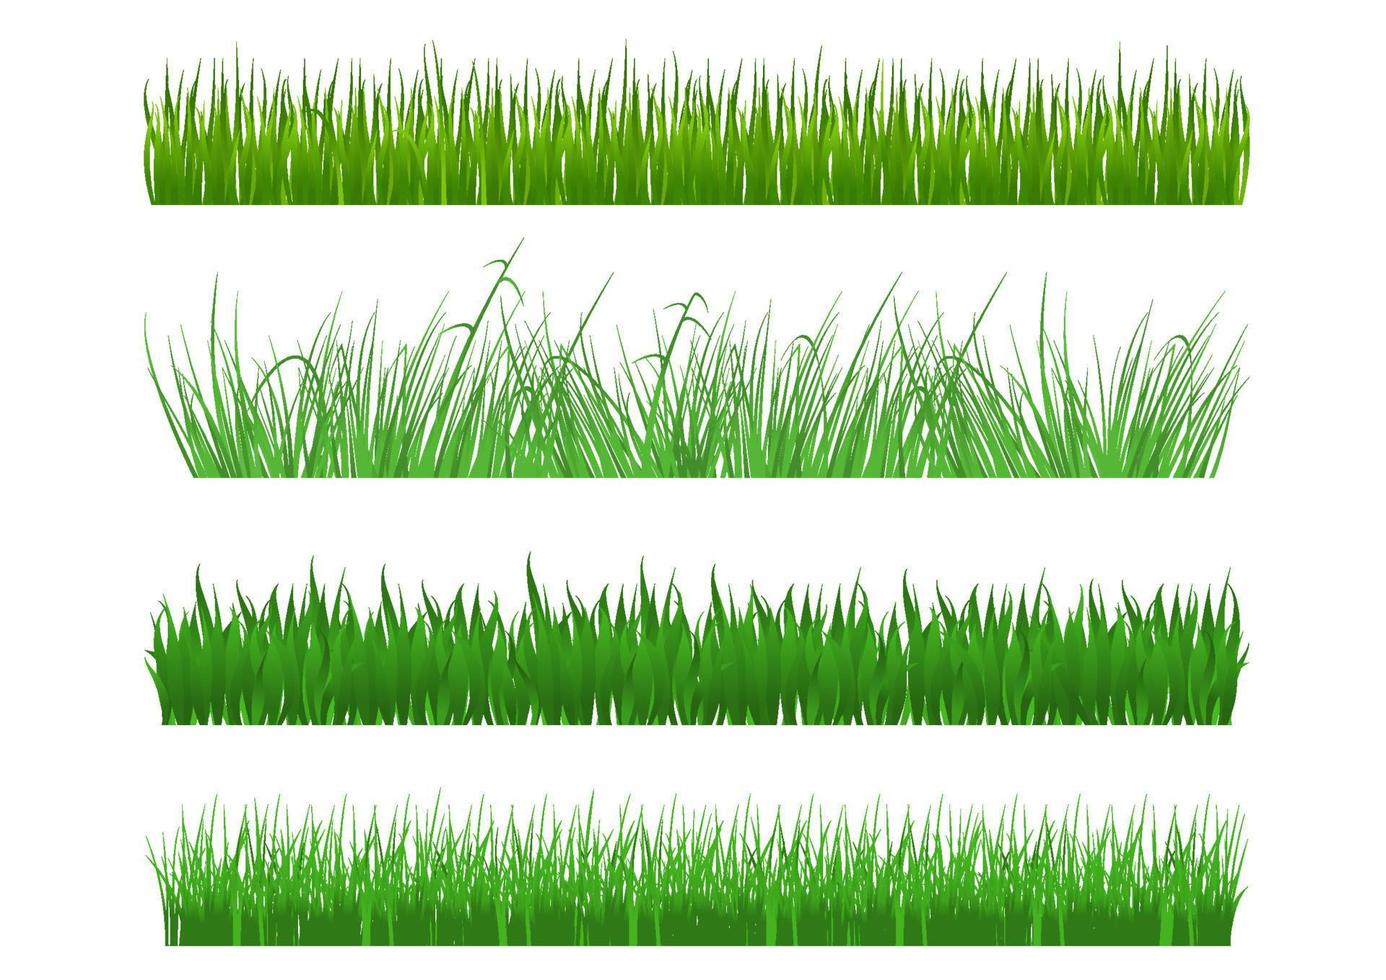 Green grass blades vector